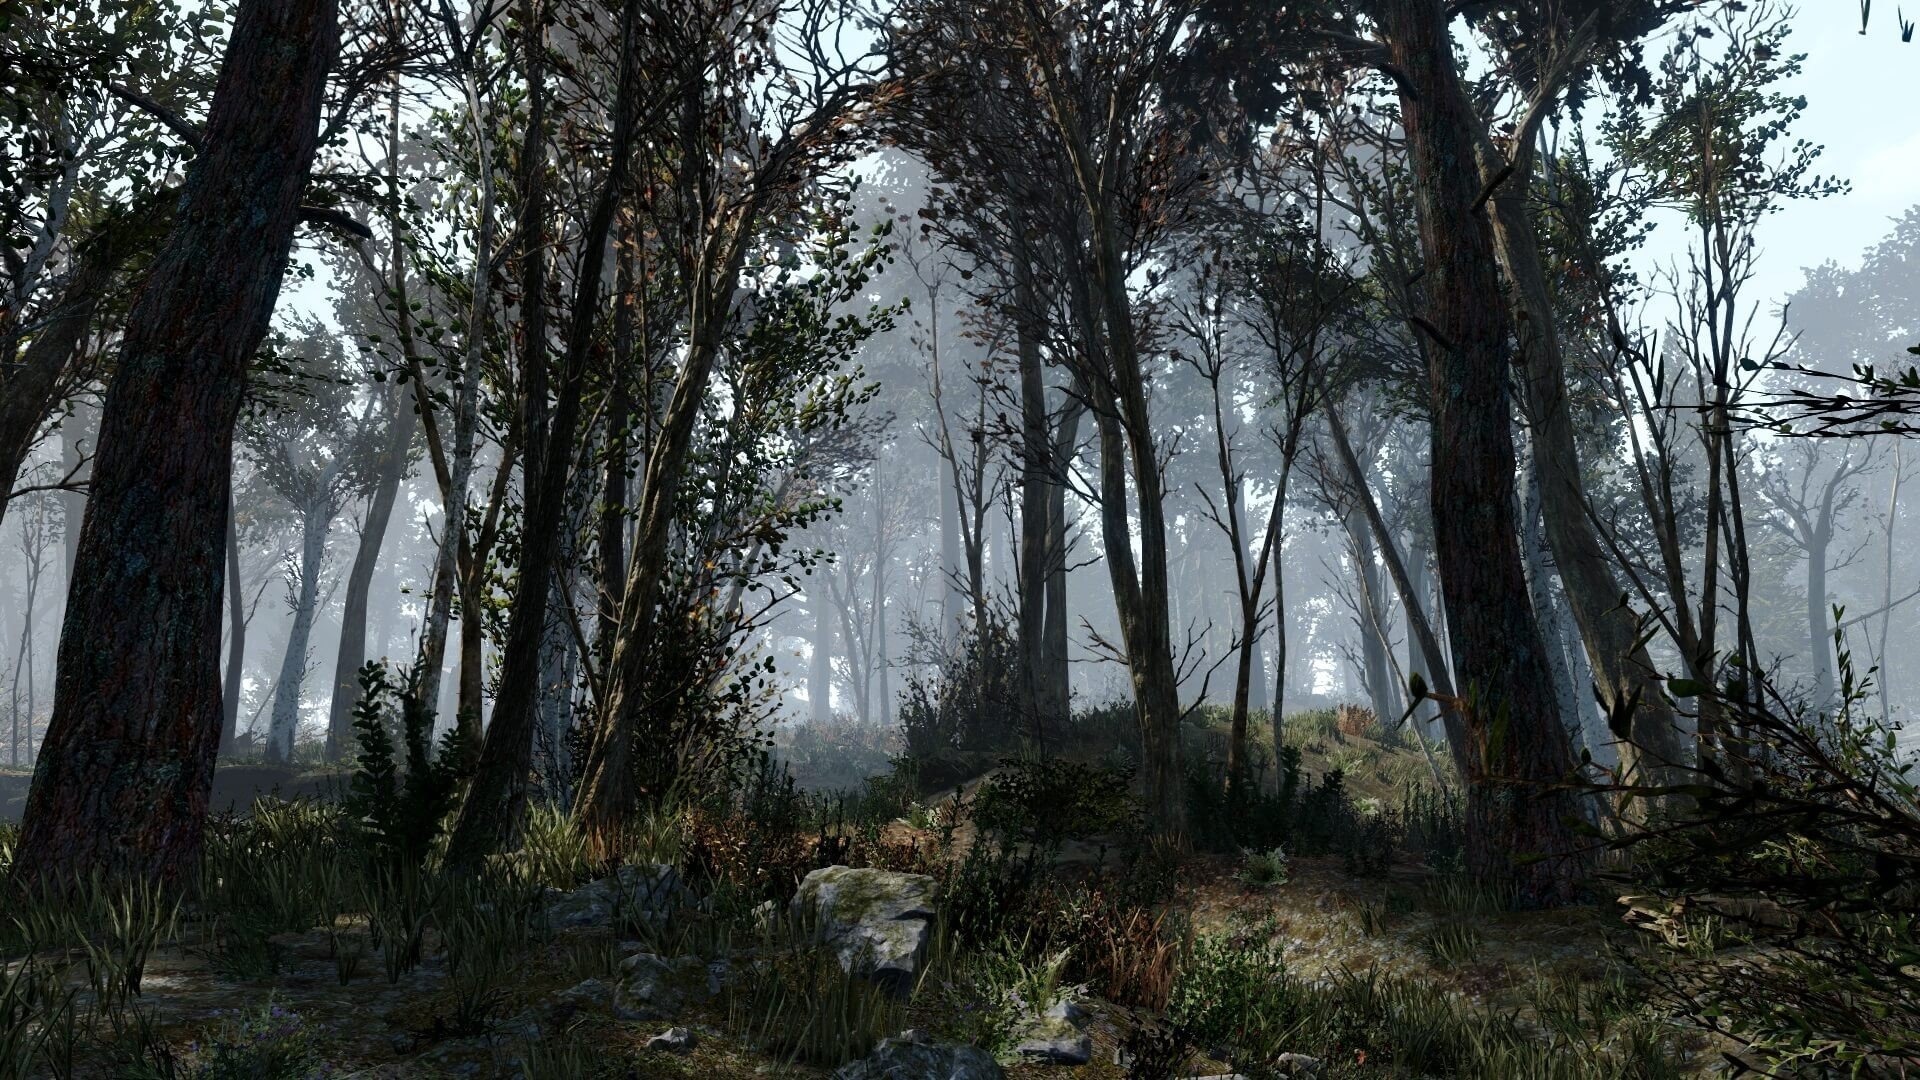 Создатель модов добавил в Fallout 4 более 18 тысяч деревьев сделав мир после апокалипсиса более живым и реалистичным